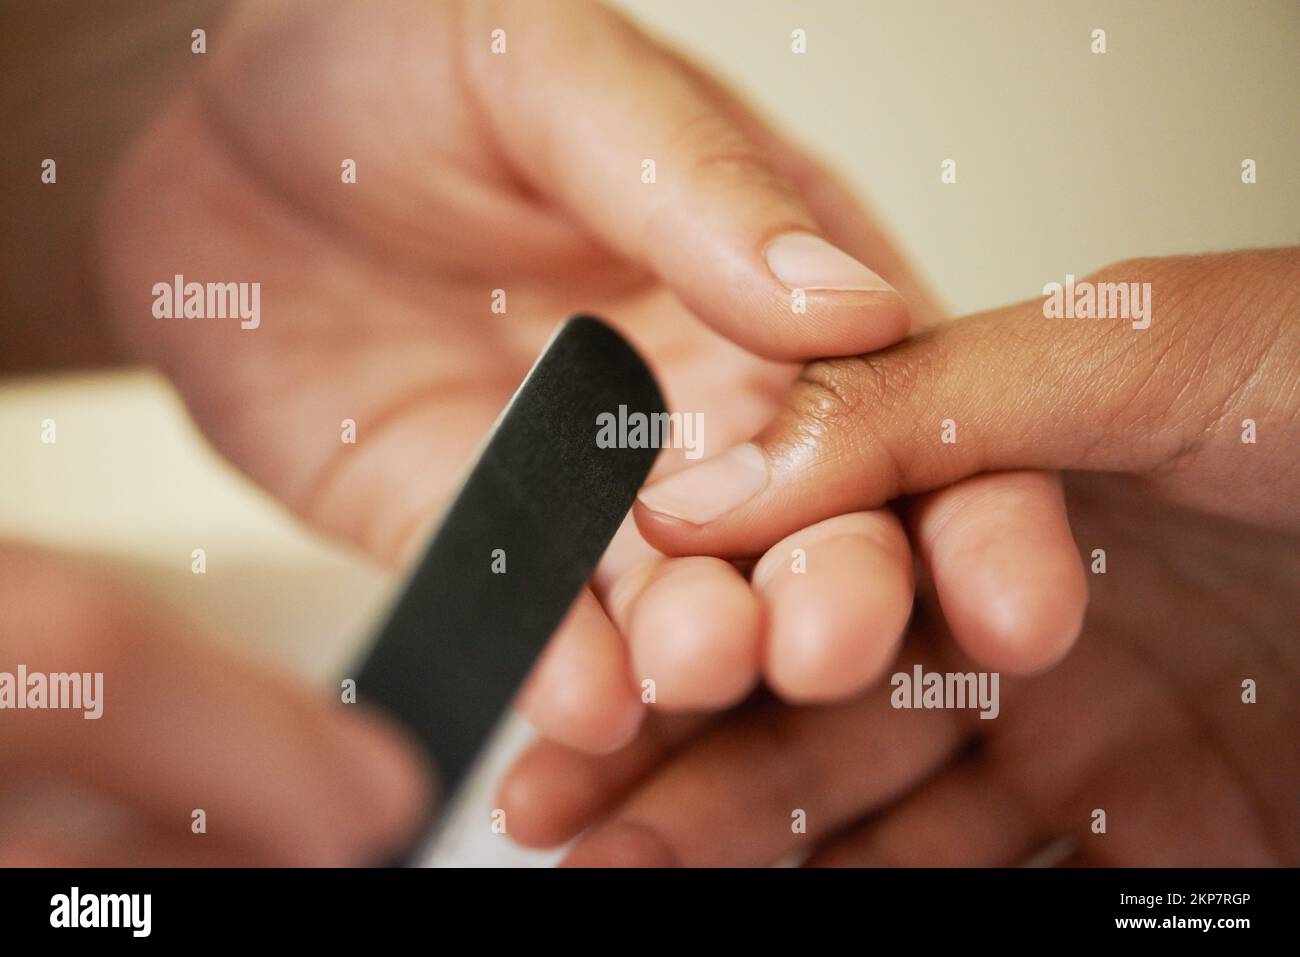 Manteniendo las herramientas afiladas. una mujer que consigue sus uñas archivadas. Foto de stock